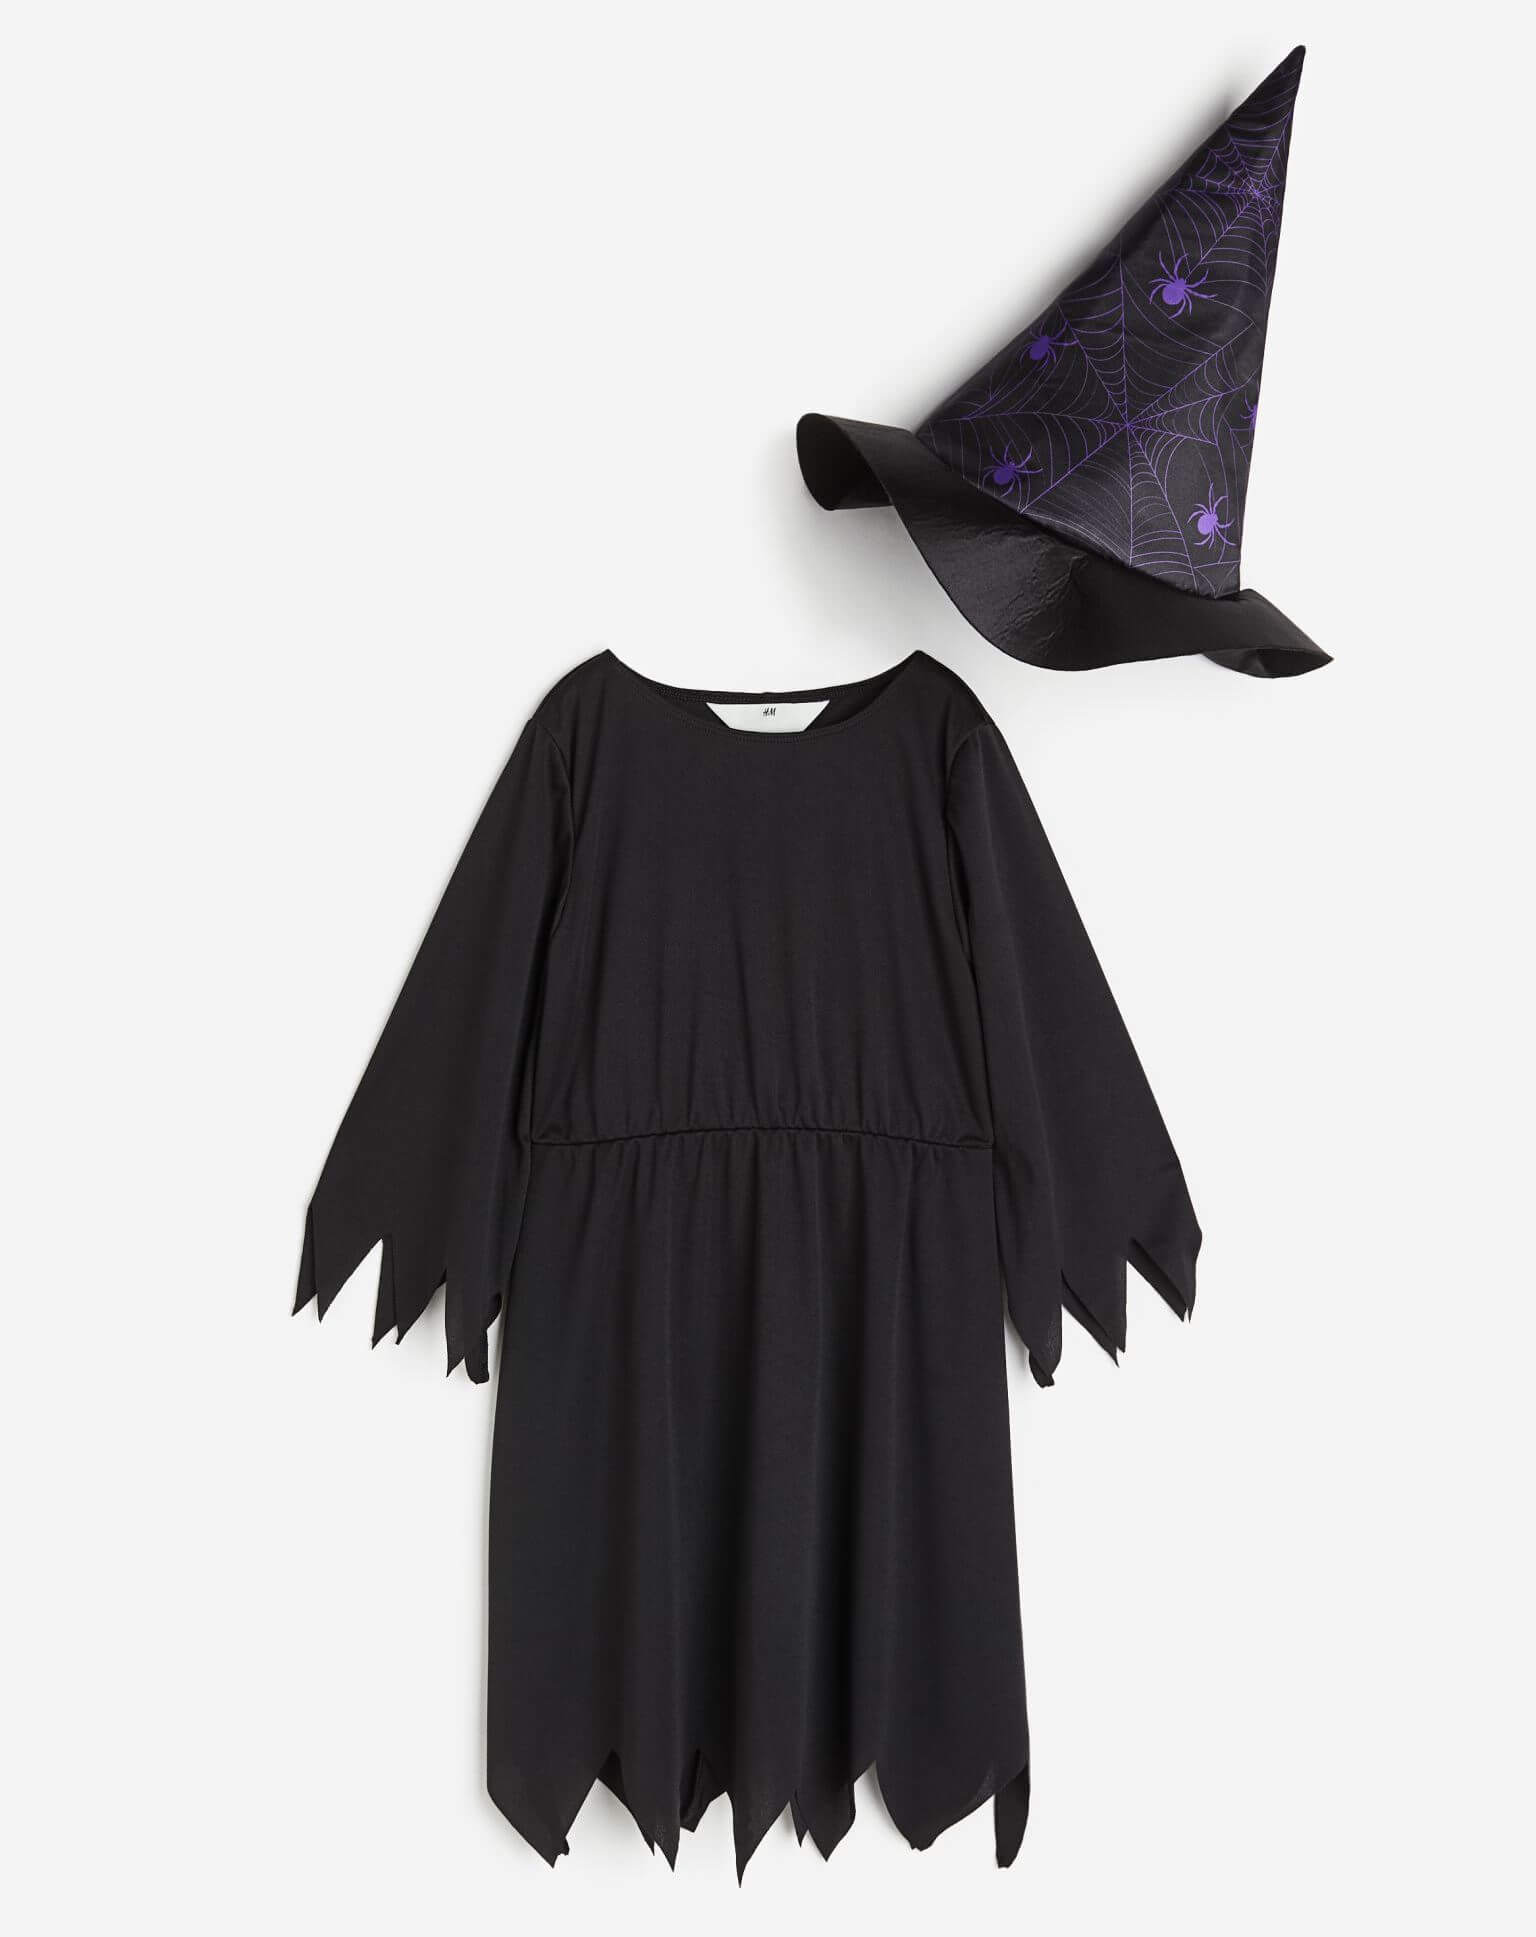 Карнавальный костюм H&M Spiders Witch, черный/фиолетовый фото